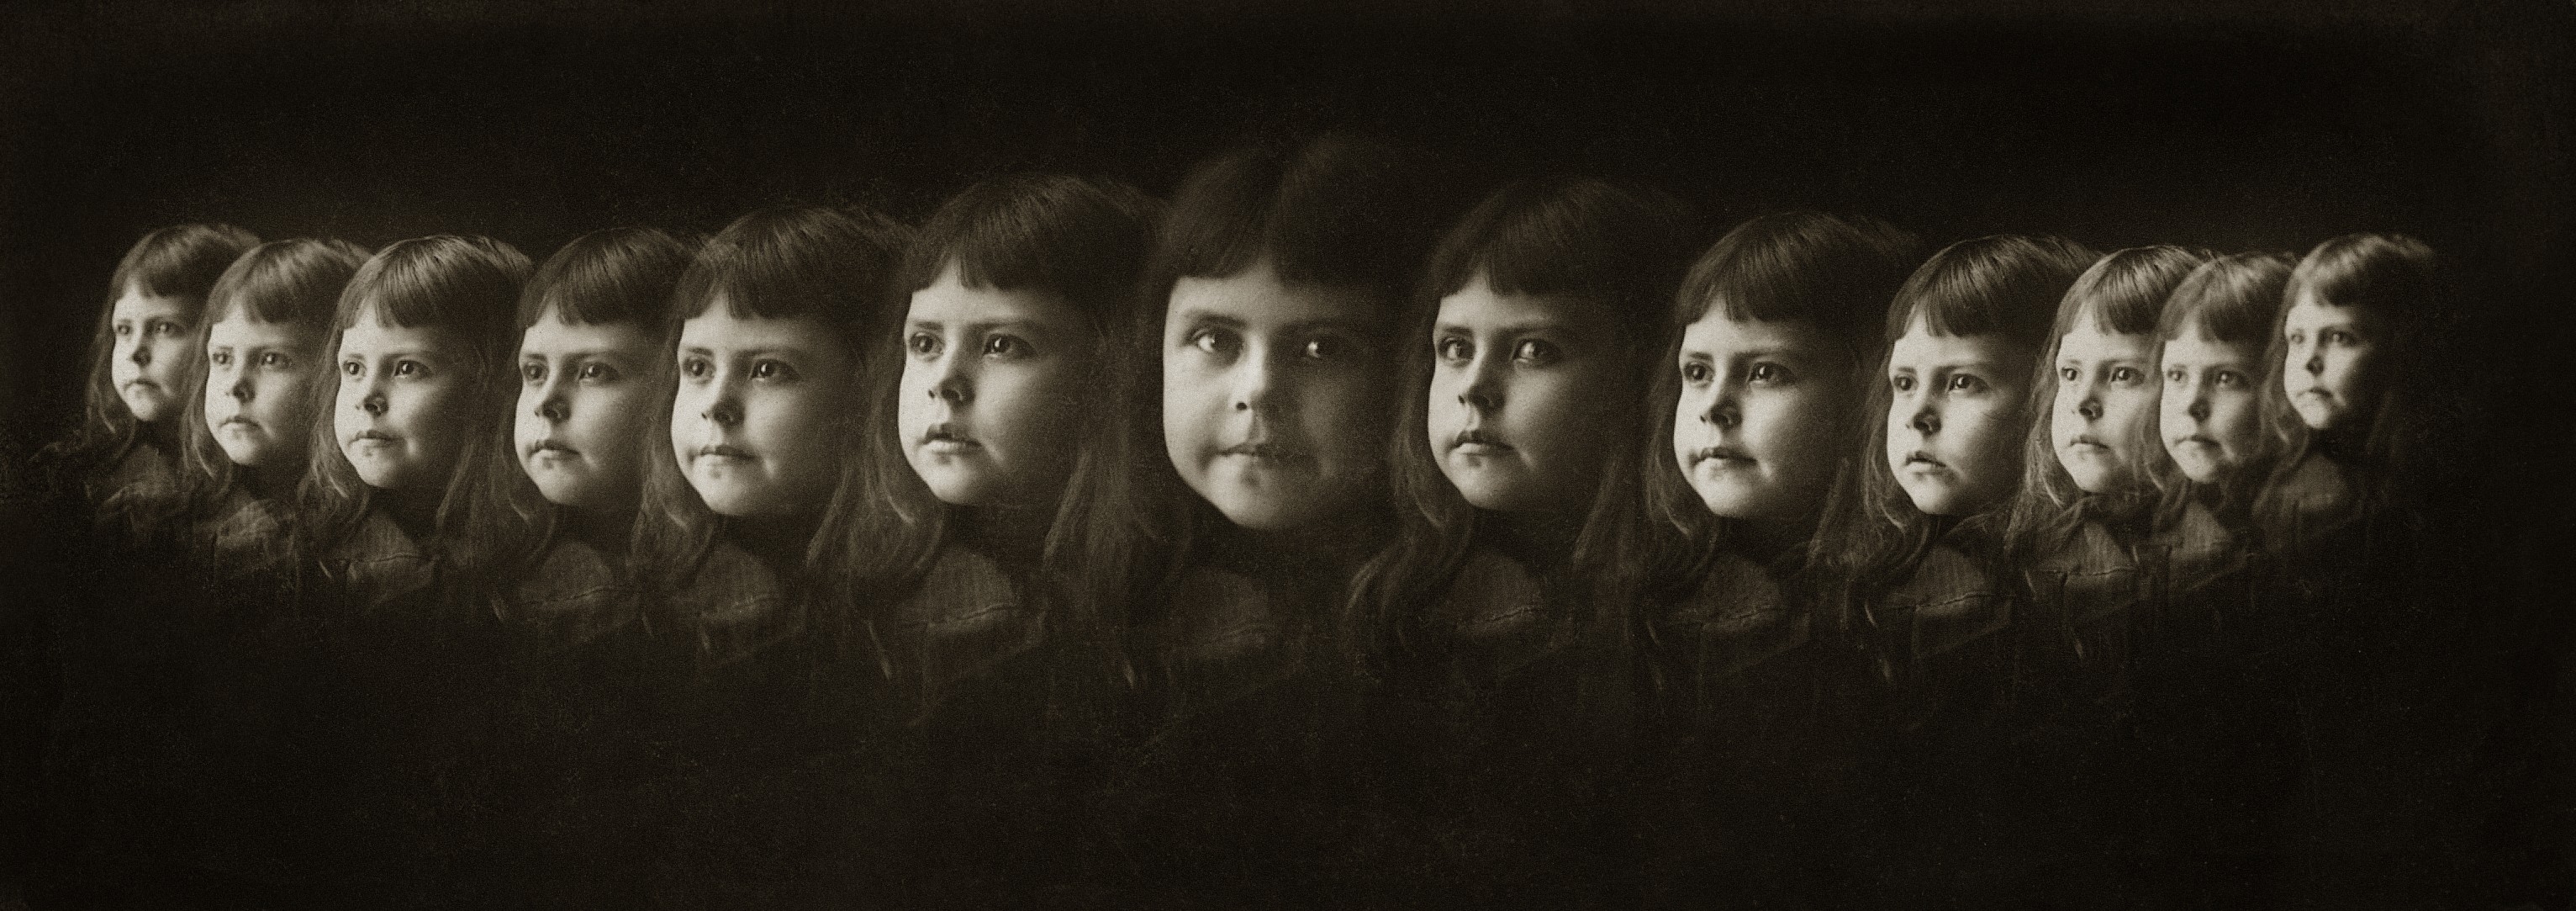 Expressões faciais em múltipla exposição (rosto de menina); fotografias tiradas por câmera construída pelo autor, São Paulo, SP, c. 1890 (Foto: Valério Vieira (Angra dos Reis, RJ, 1862 - São Paulo, SP, 1941))